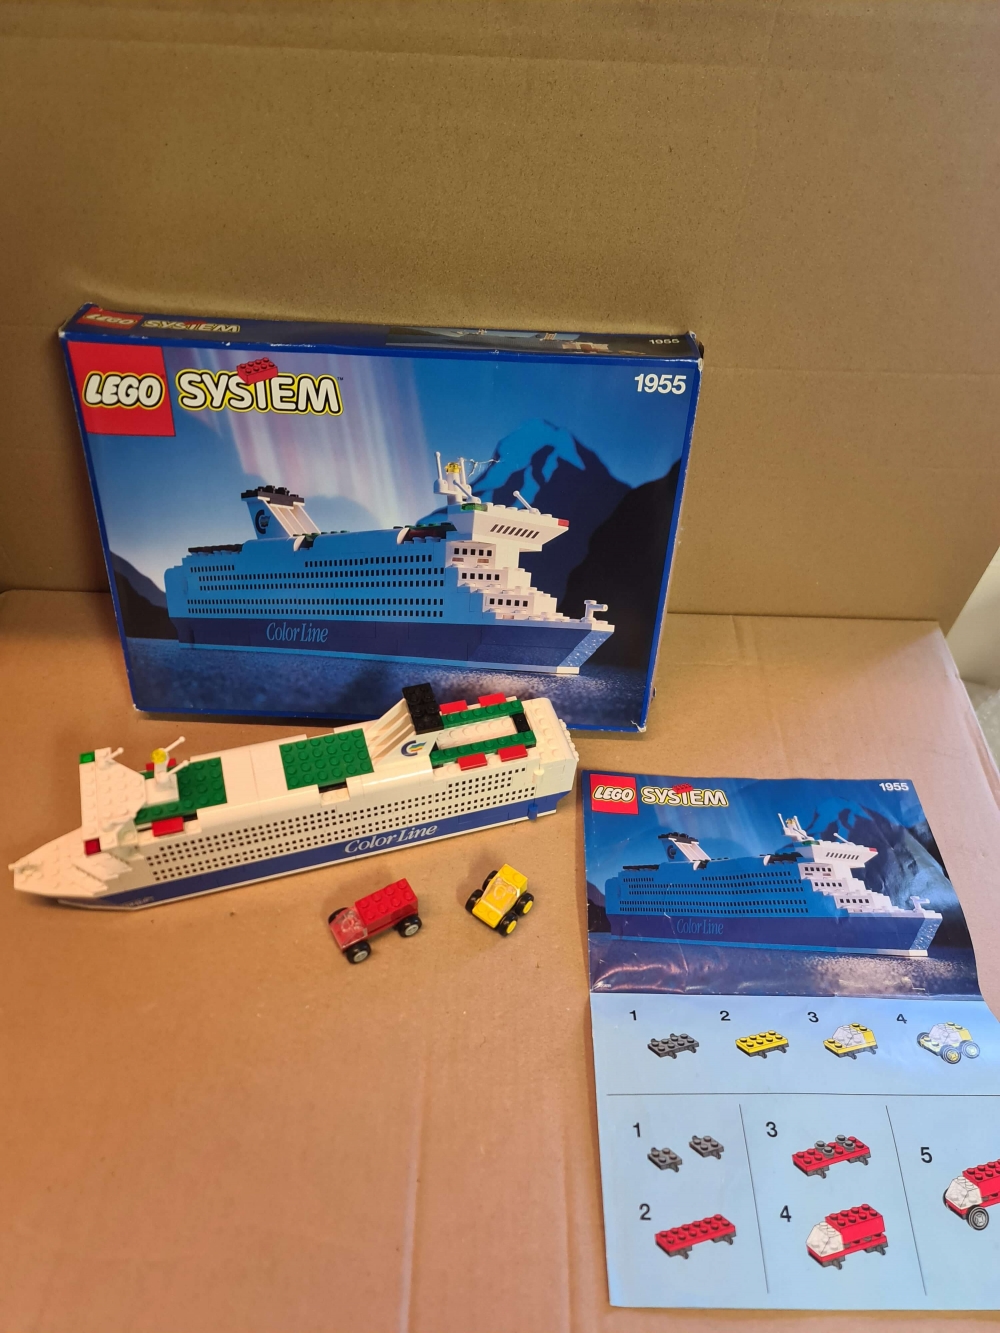 Sett 1955 fra Lego Universal Building Set : Ferries serien.

Nydelig sett. Komplett med manual og eske.
Det er Kronprins Harald klistremerker som står på.